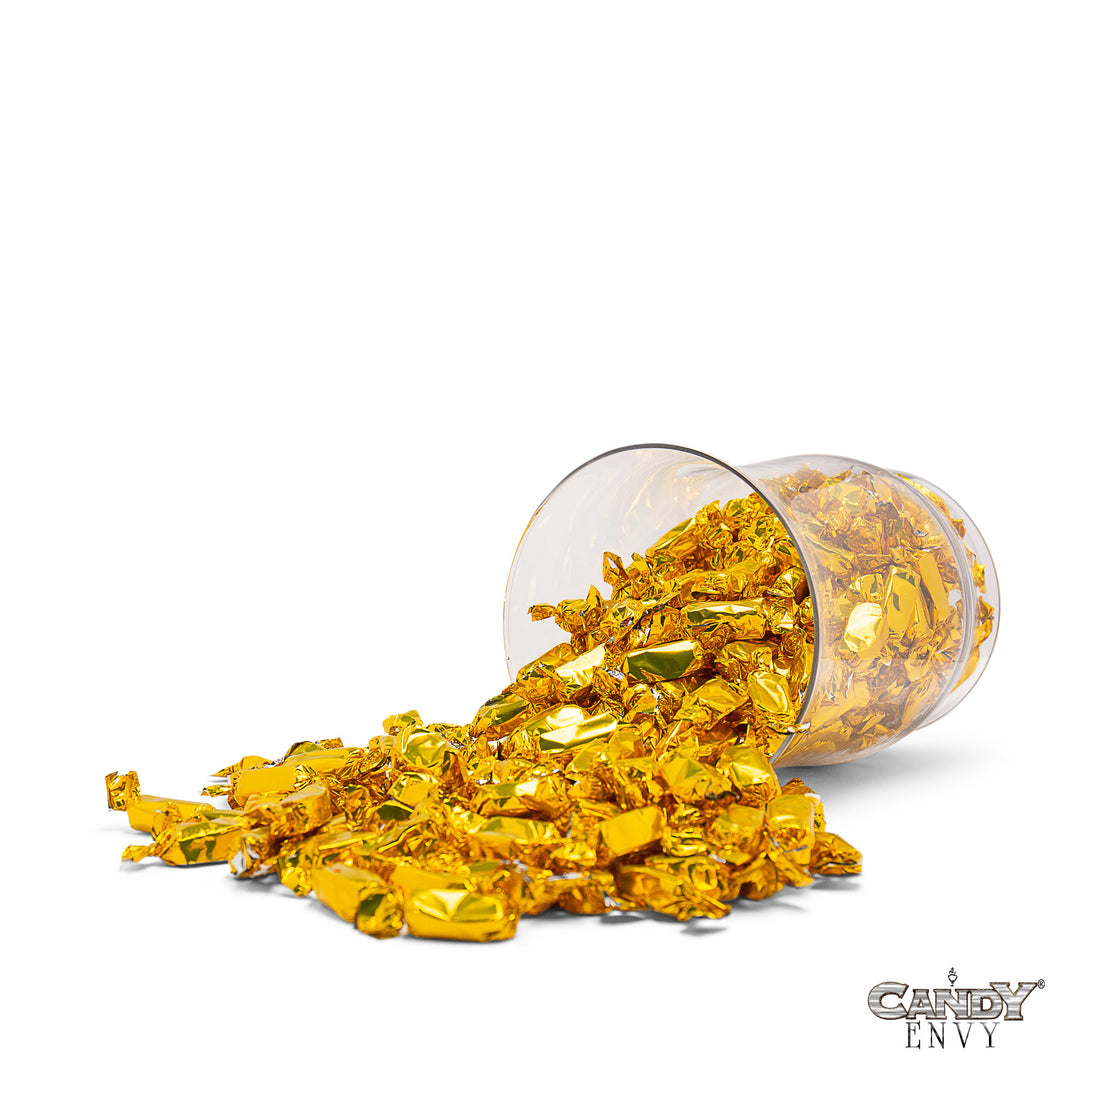 Gold Foil-Wrapped Caramels - 2 lb Bag